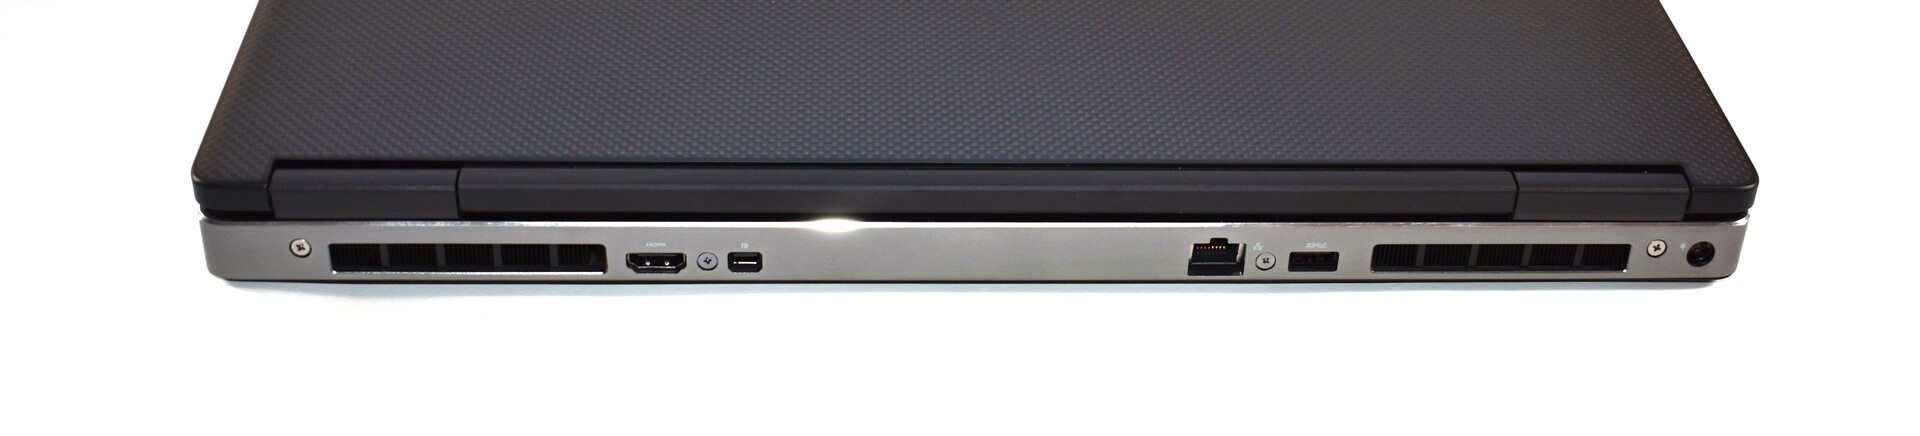 Đánh giá Dell Precision 7730: Mạnh mẽ nhưng thời lượng pin không tốt, Chuyên trang tư vấn laptop